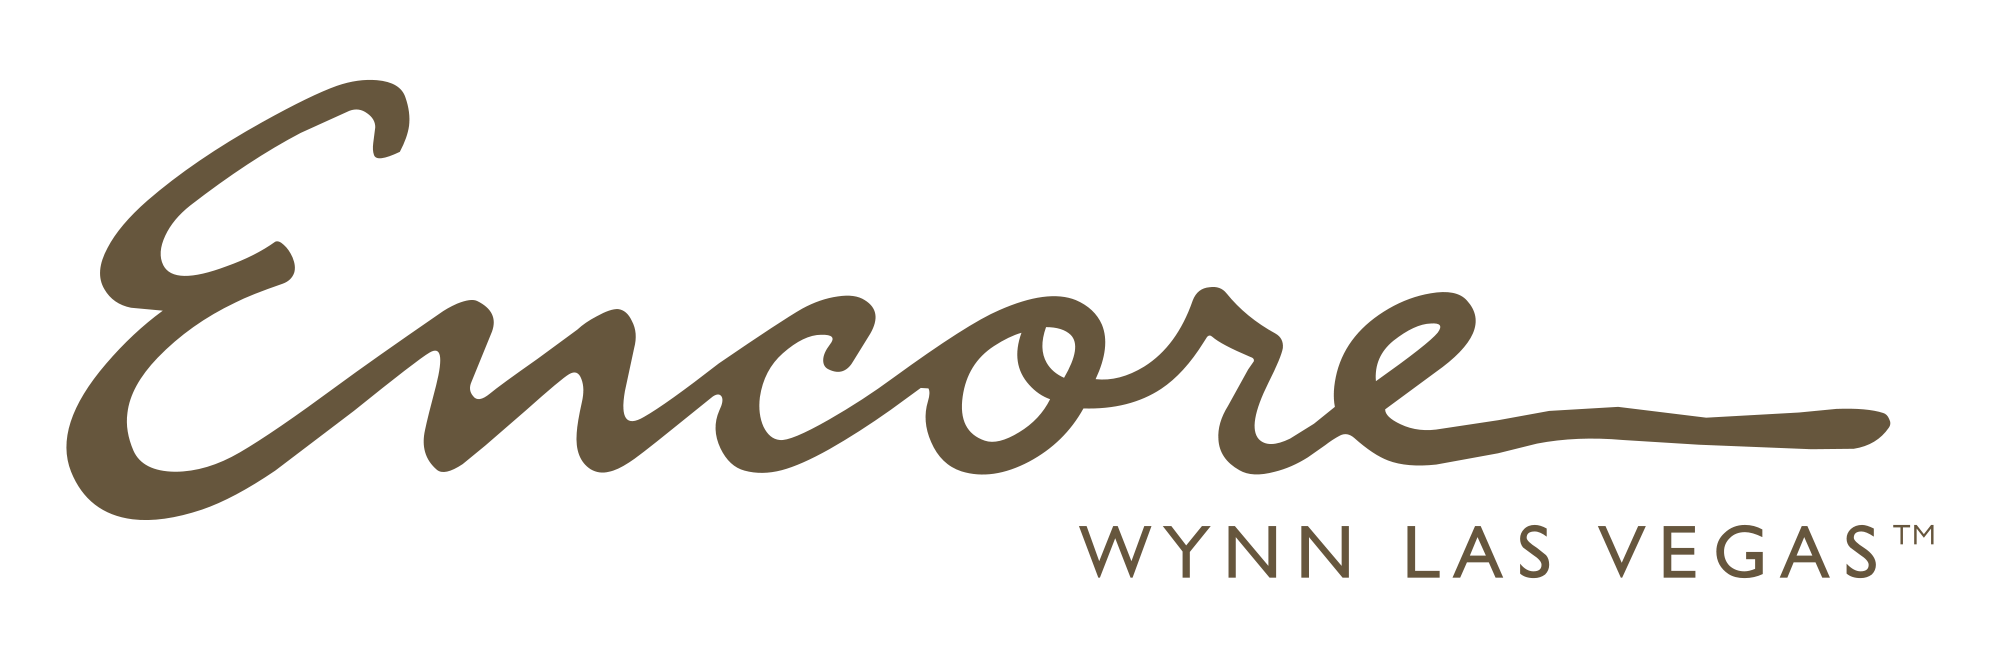 Wynn Logo - Encore Wynn Las Vegas Logo transparent PNG - StickPNG